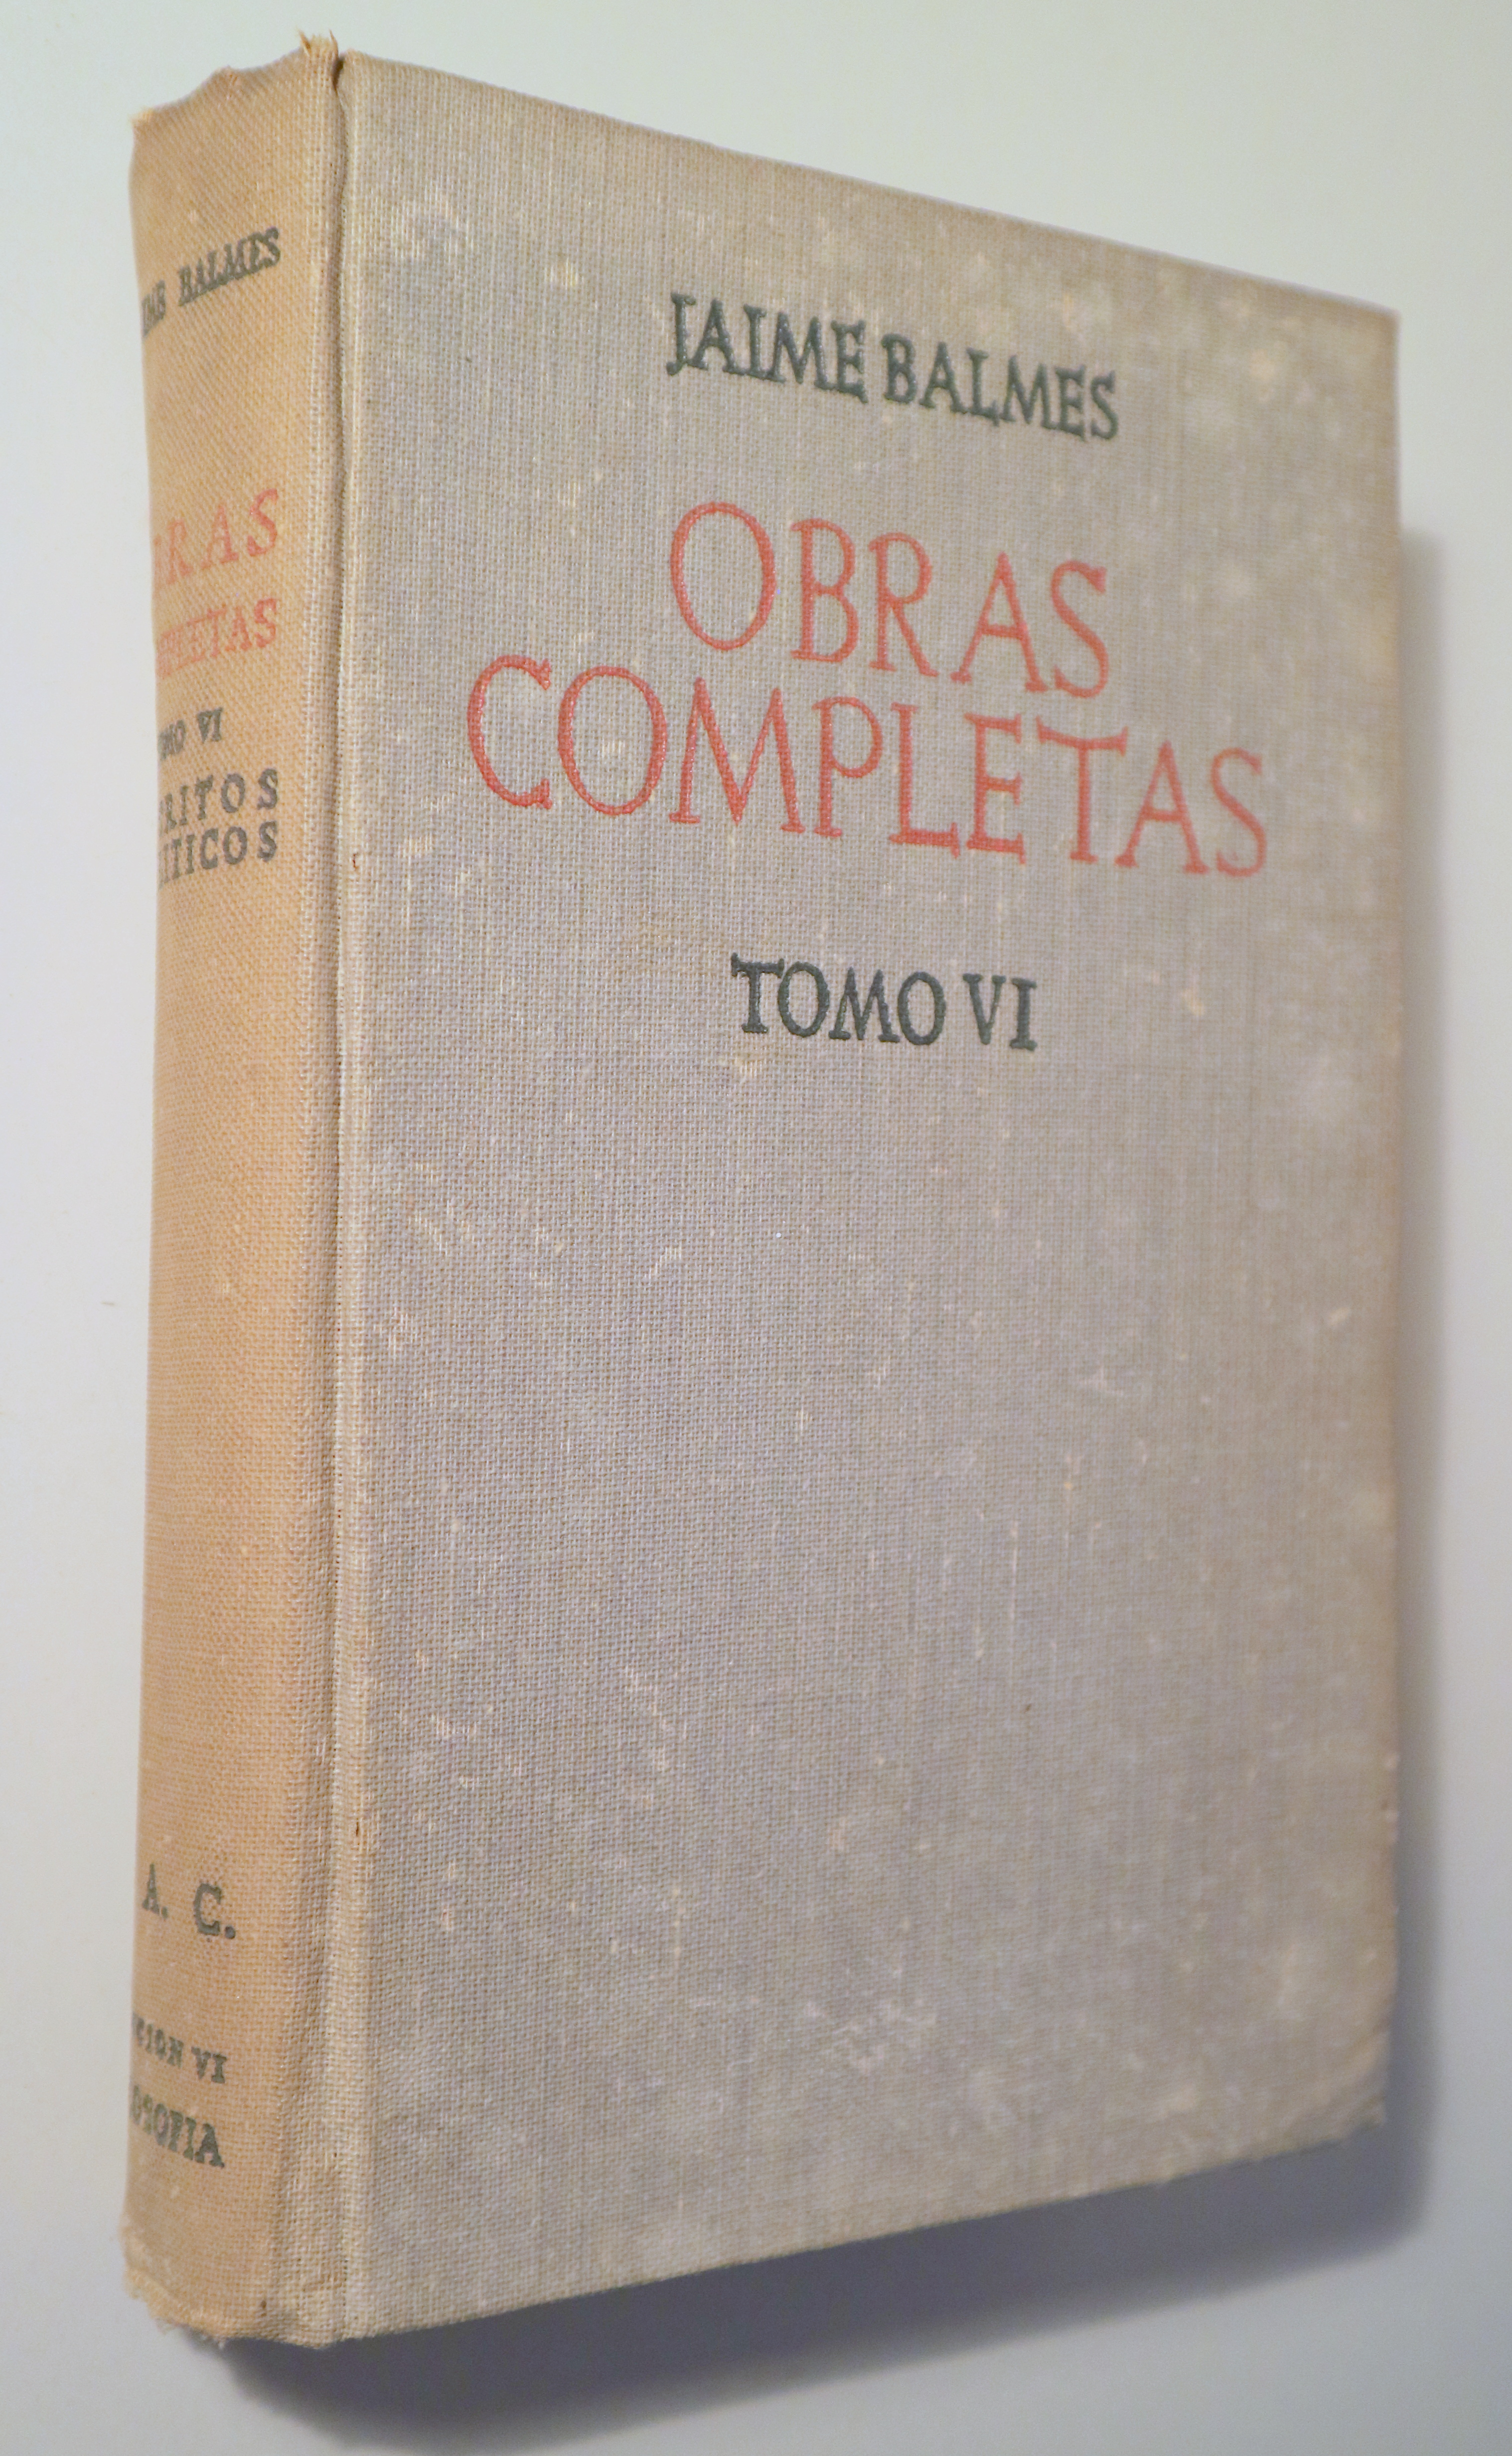 OBRAS COMPLETAS. Tomo VI. Escritos políticos - Madrid 1950